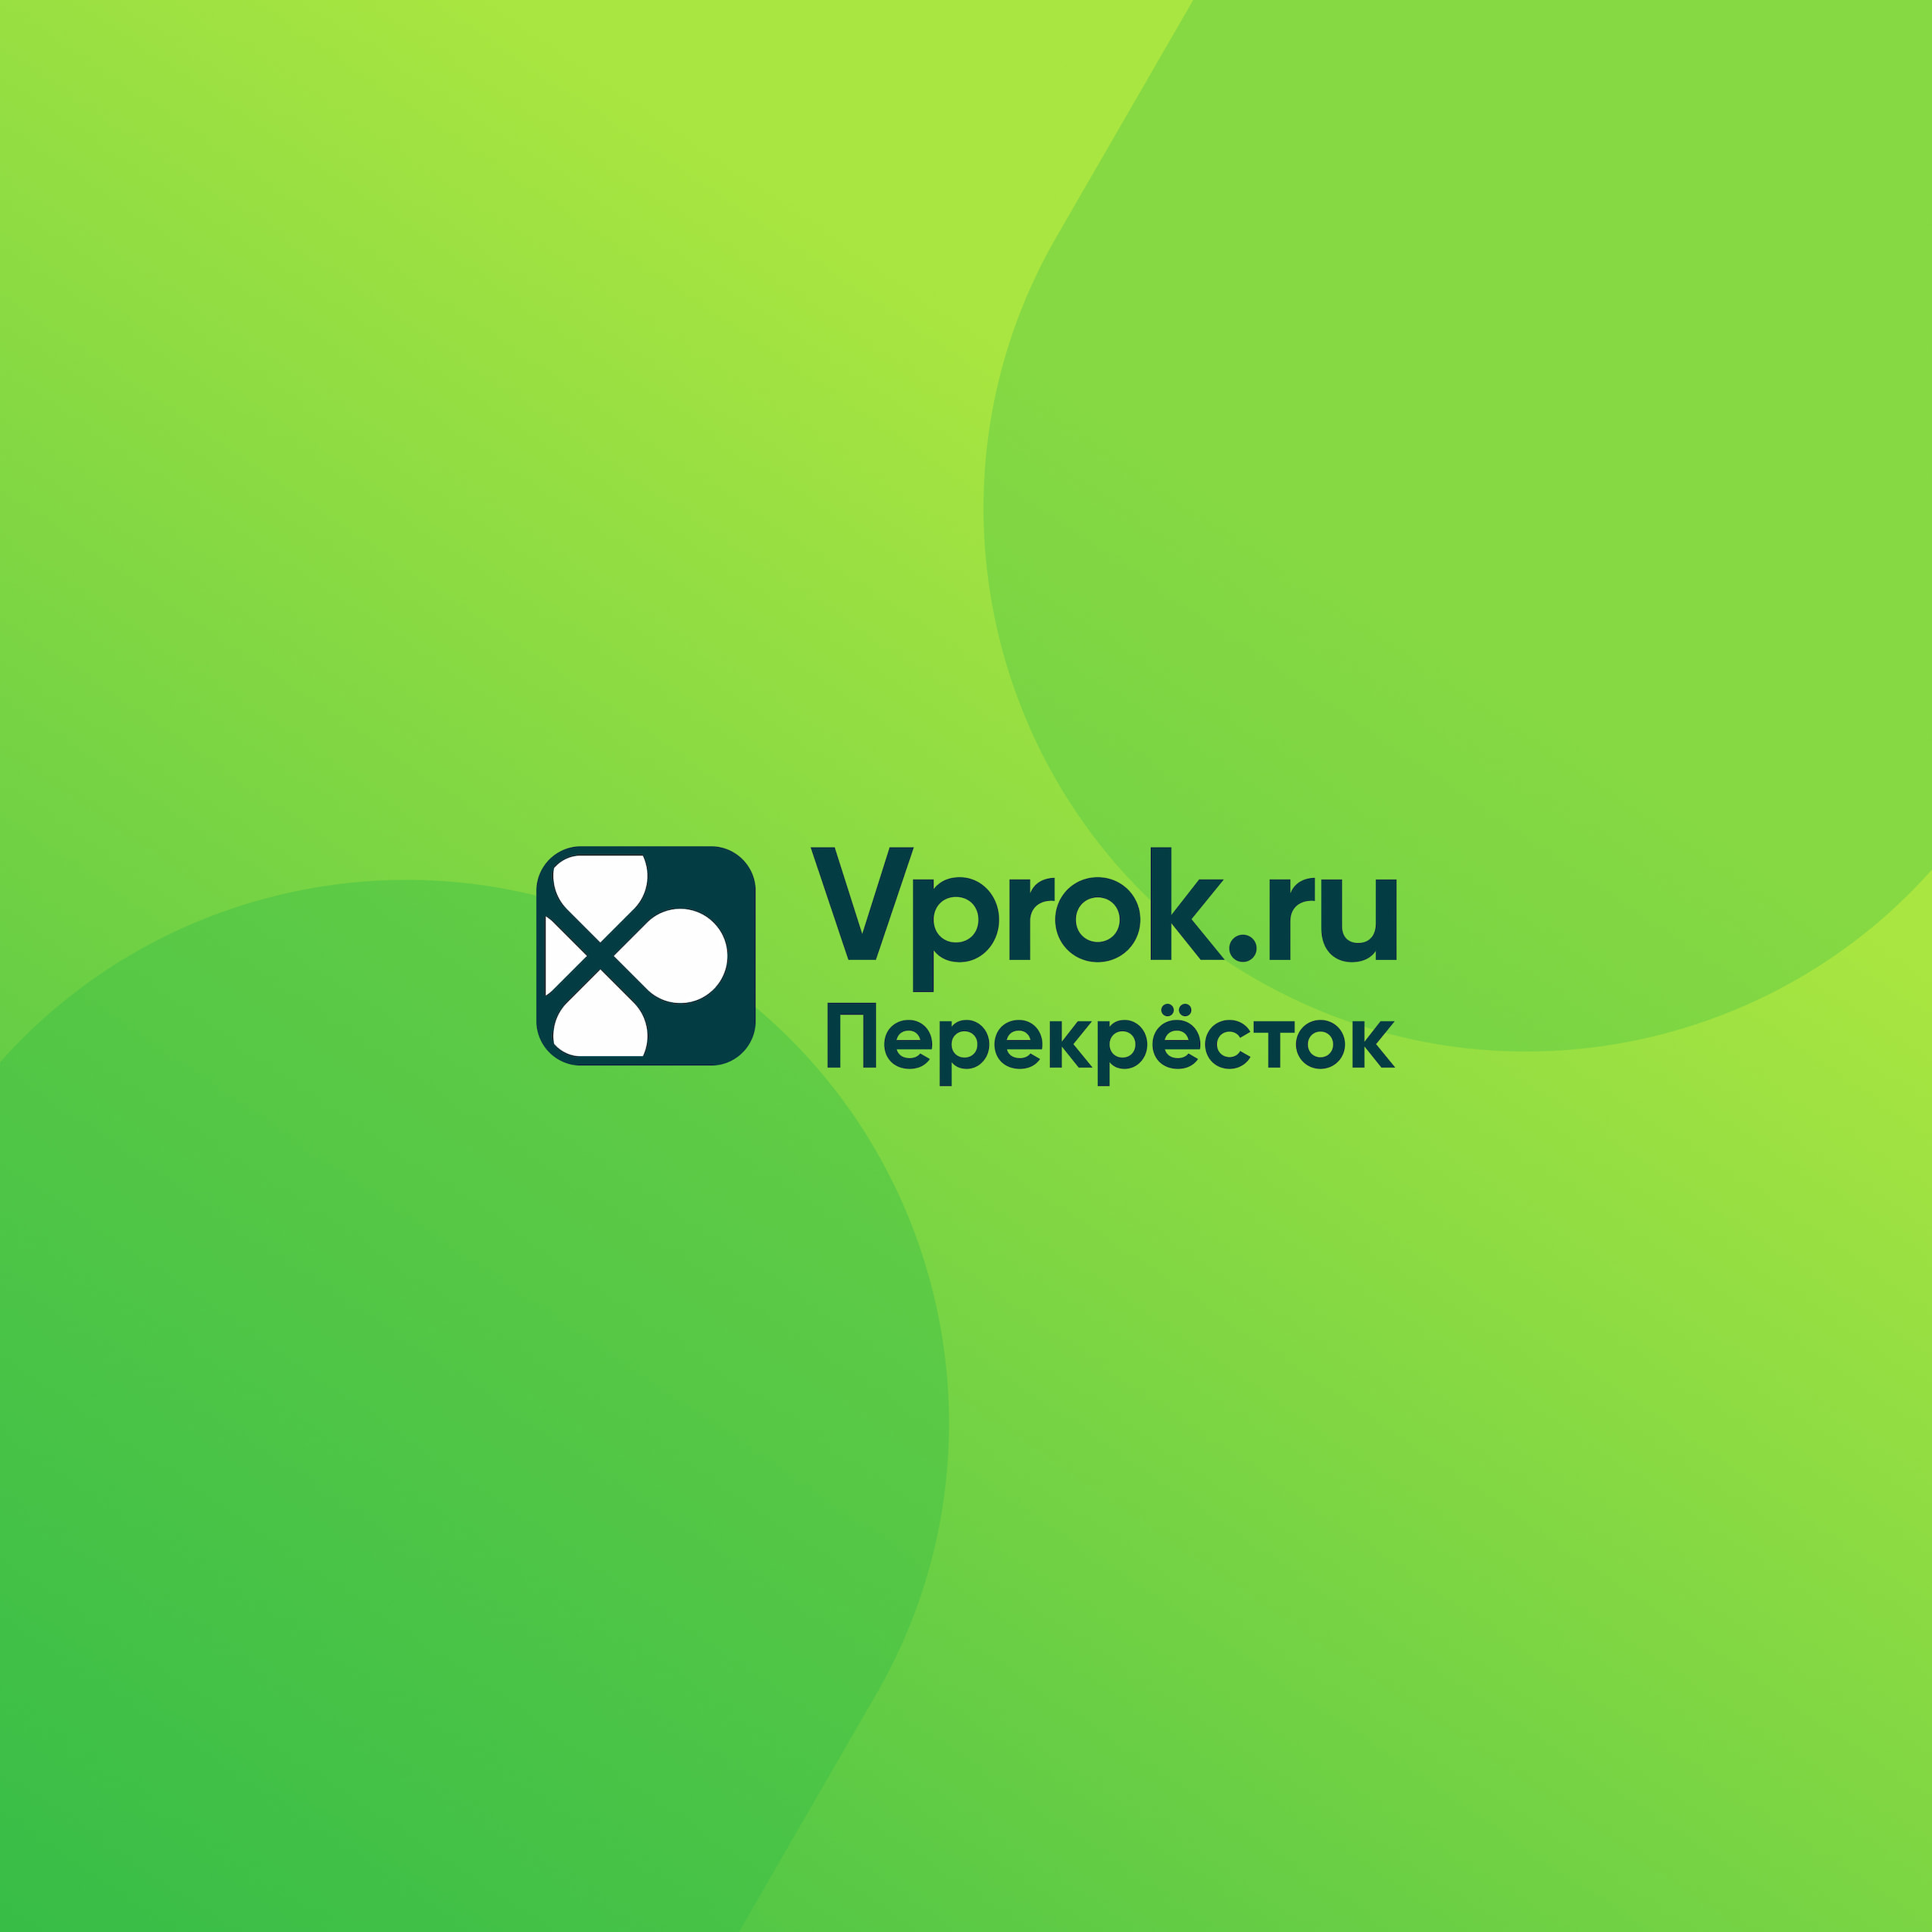 Развитие онлайн-гипермаркета Vprok.ru